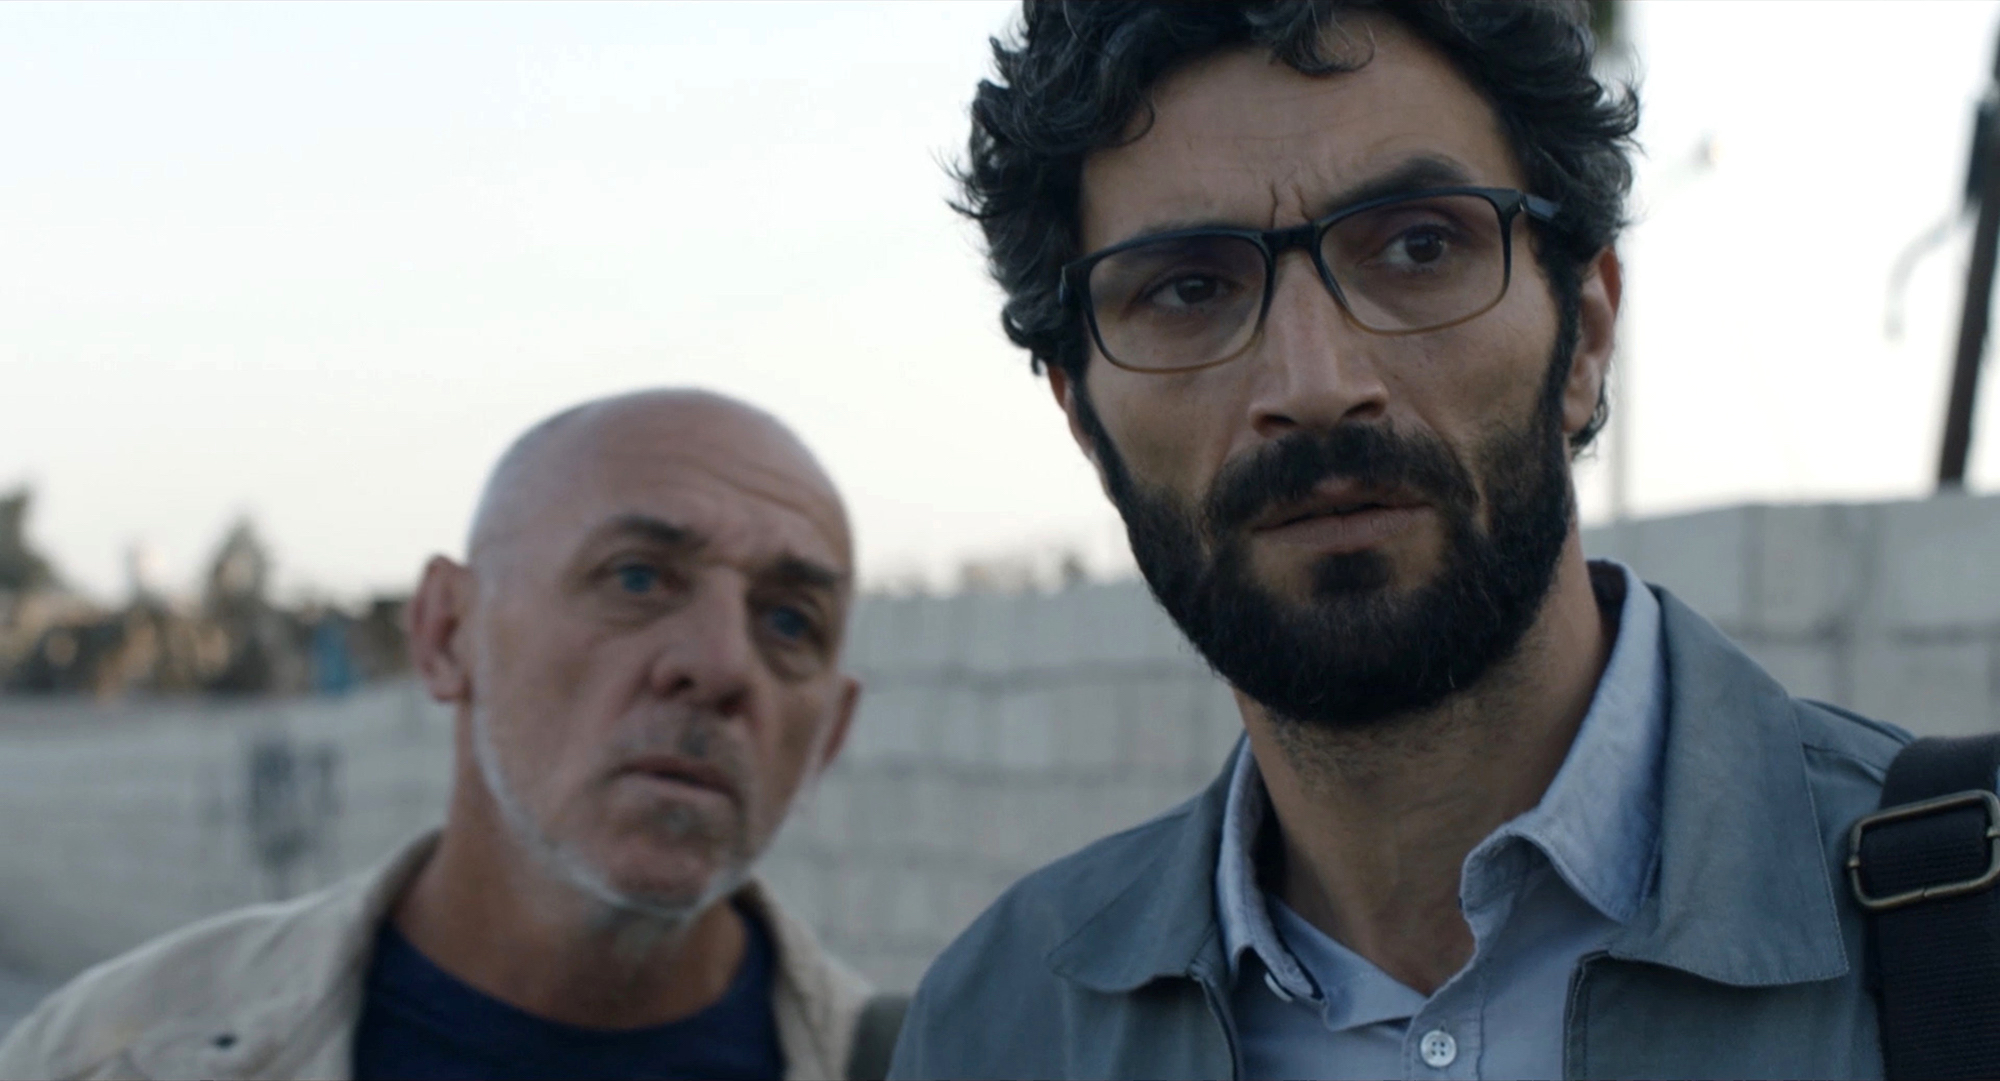 L’acteur palestinien Ziad Bakri incarne un interprète syrien qui ne peut plus retourner dans son pays, sous peine de mort…